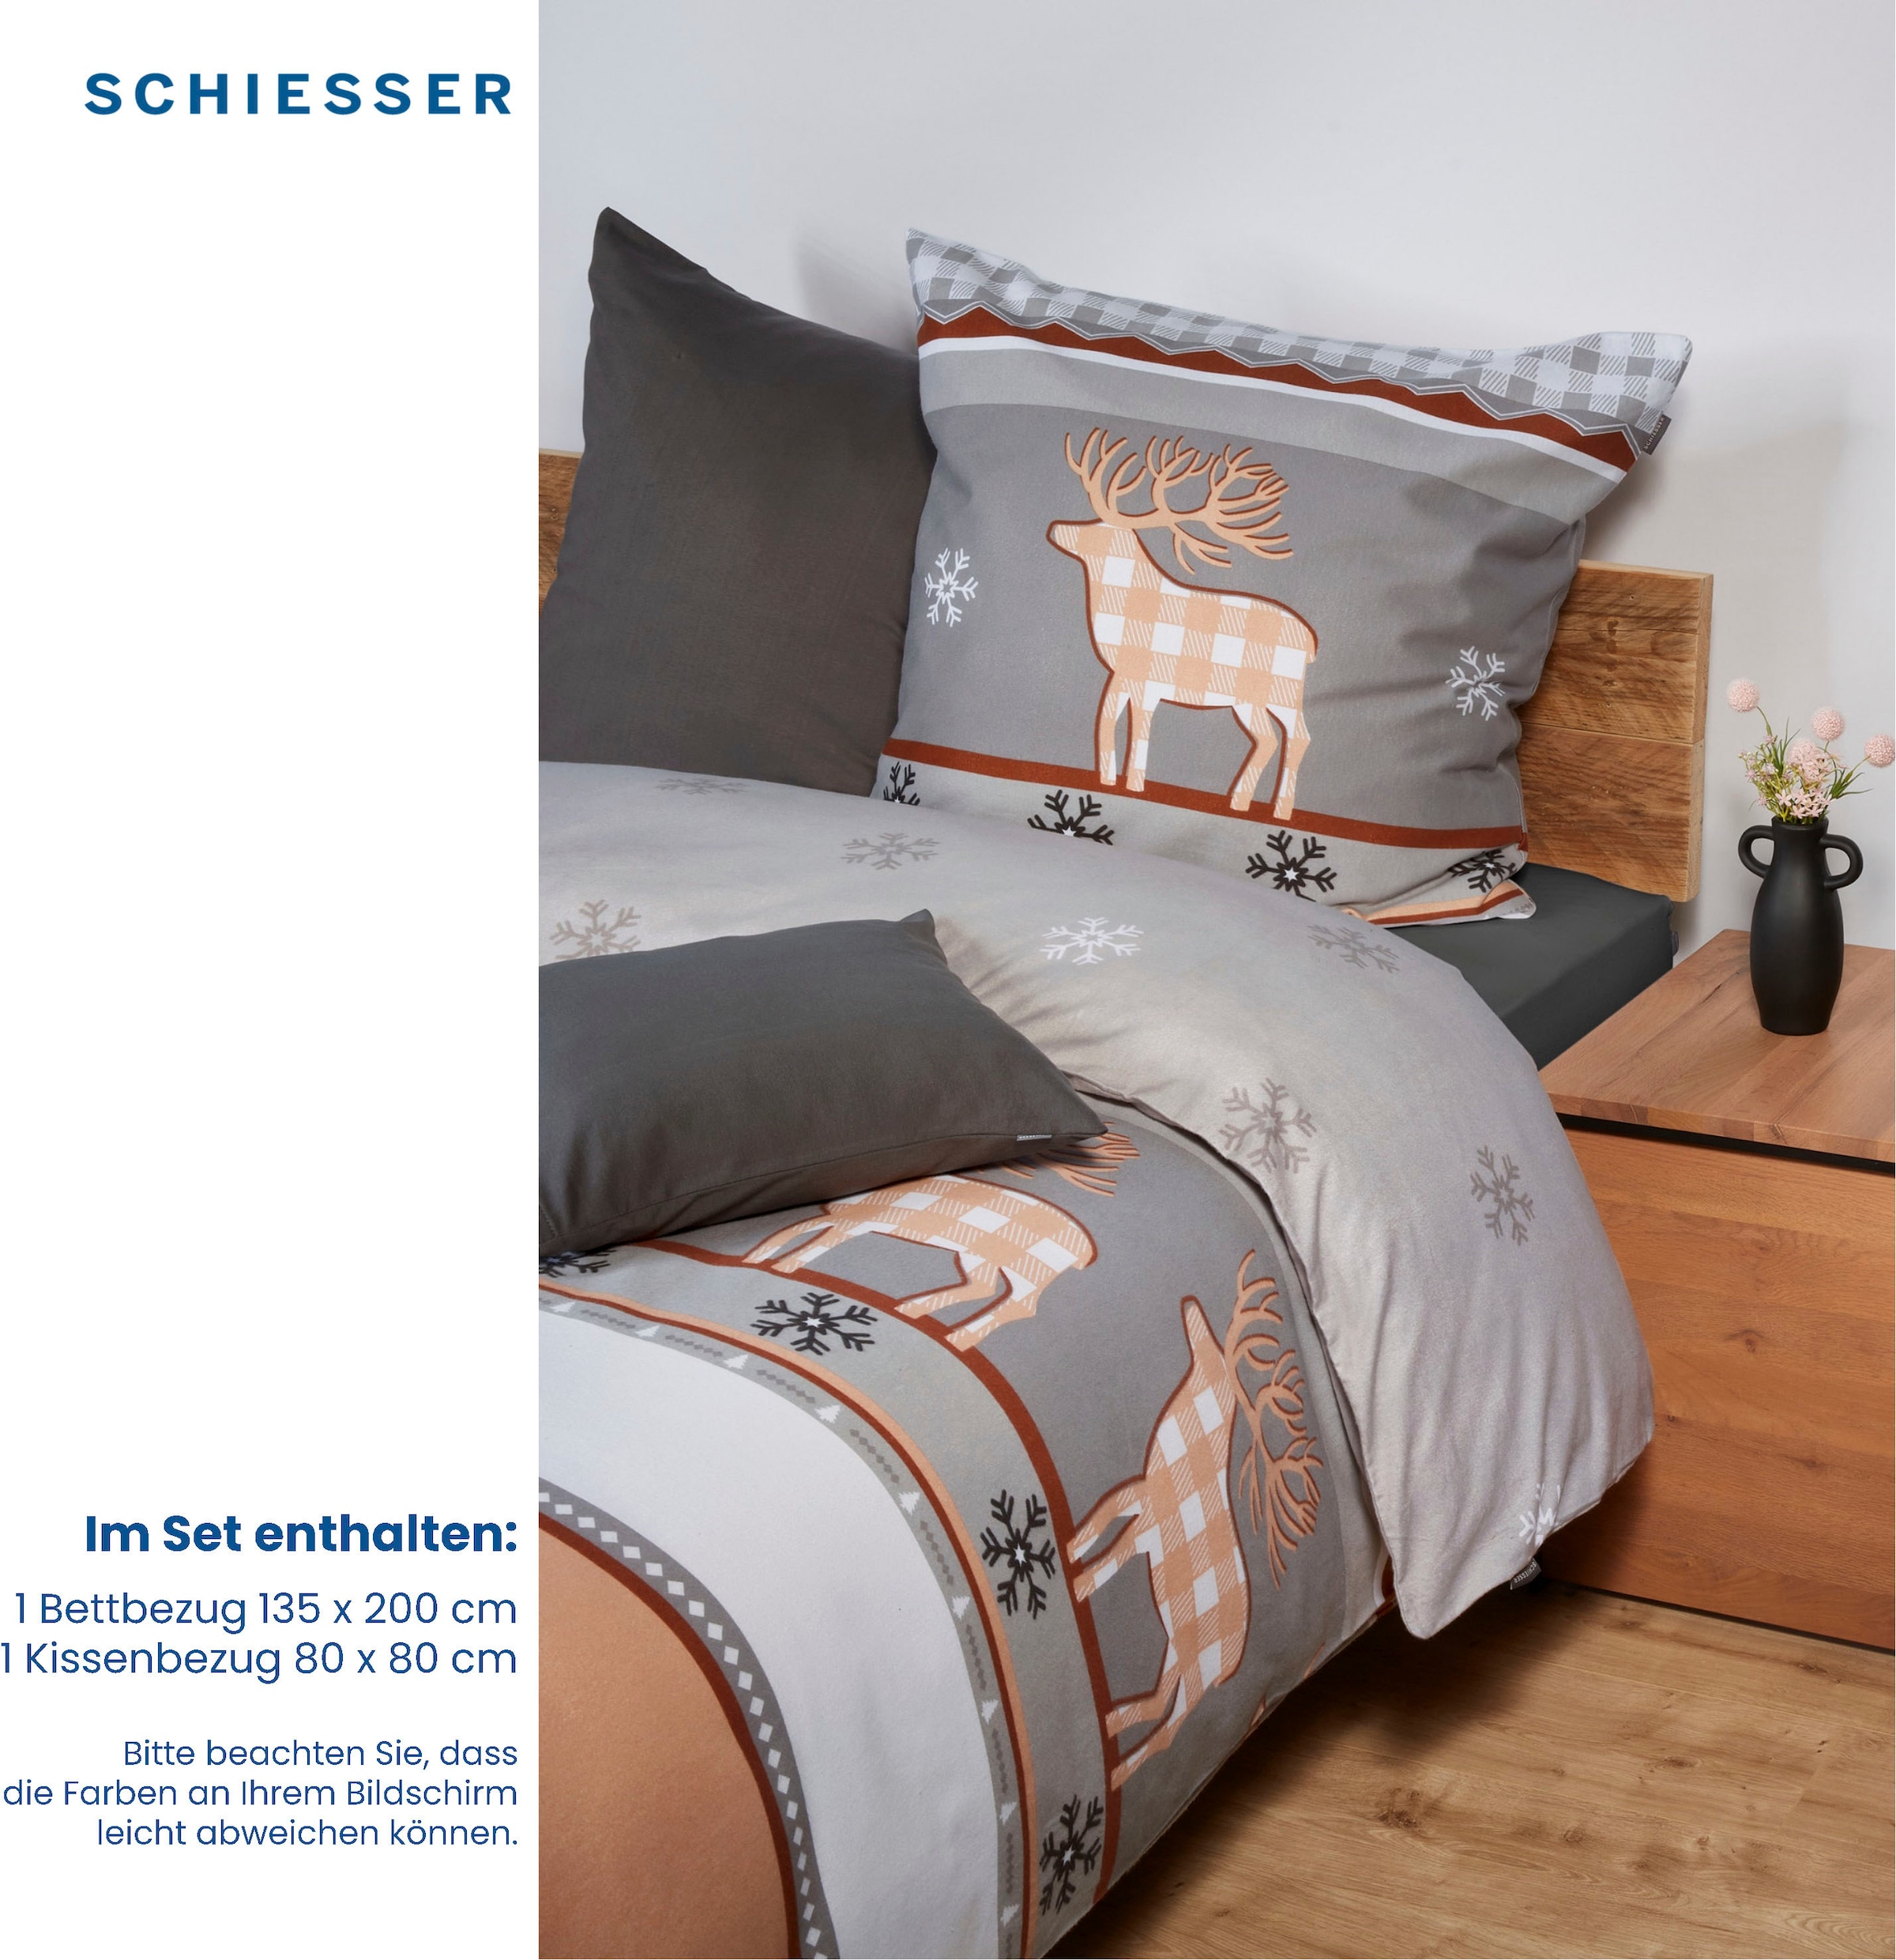 Schiesser Bettwäsche »Verda«, (2 tlg.), winderliches Elch-Design